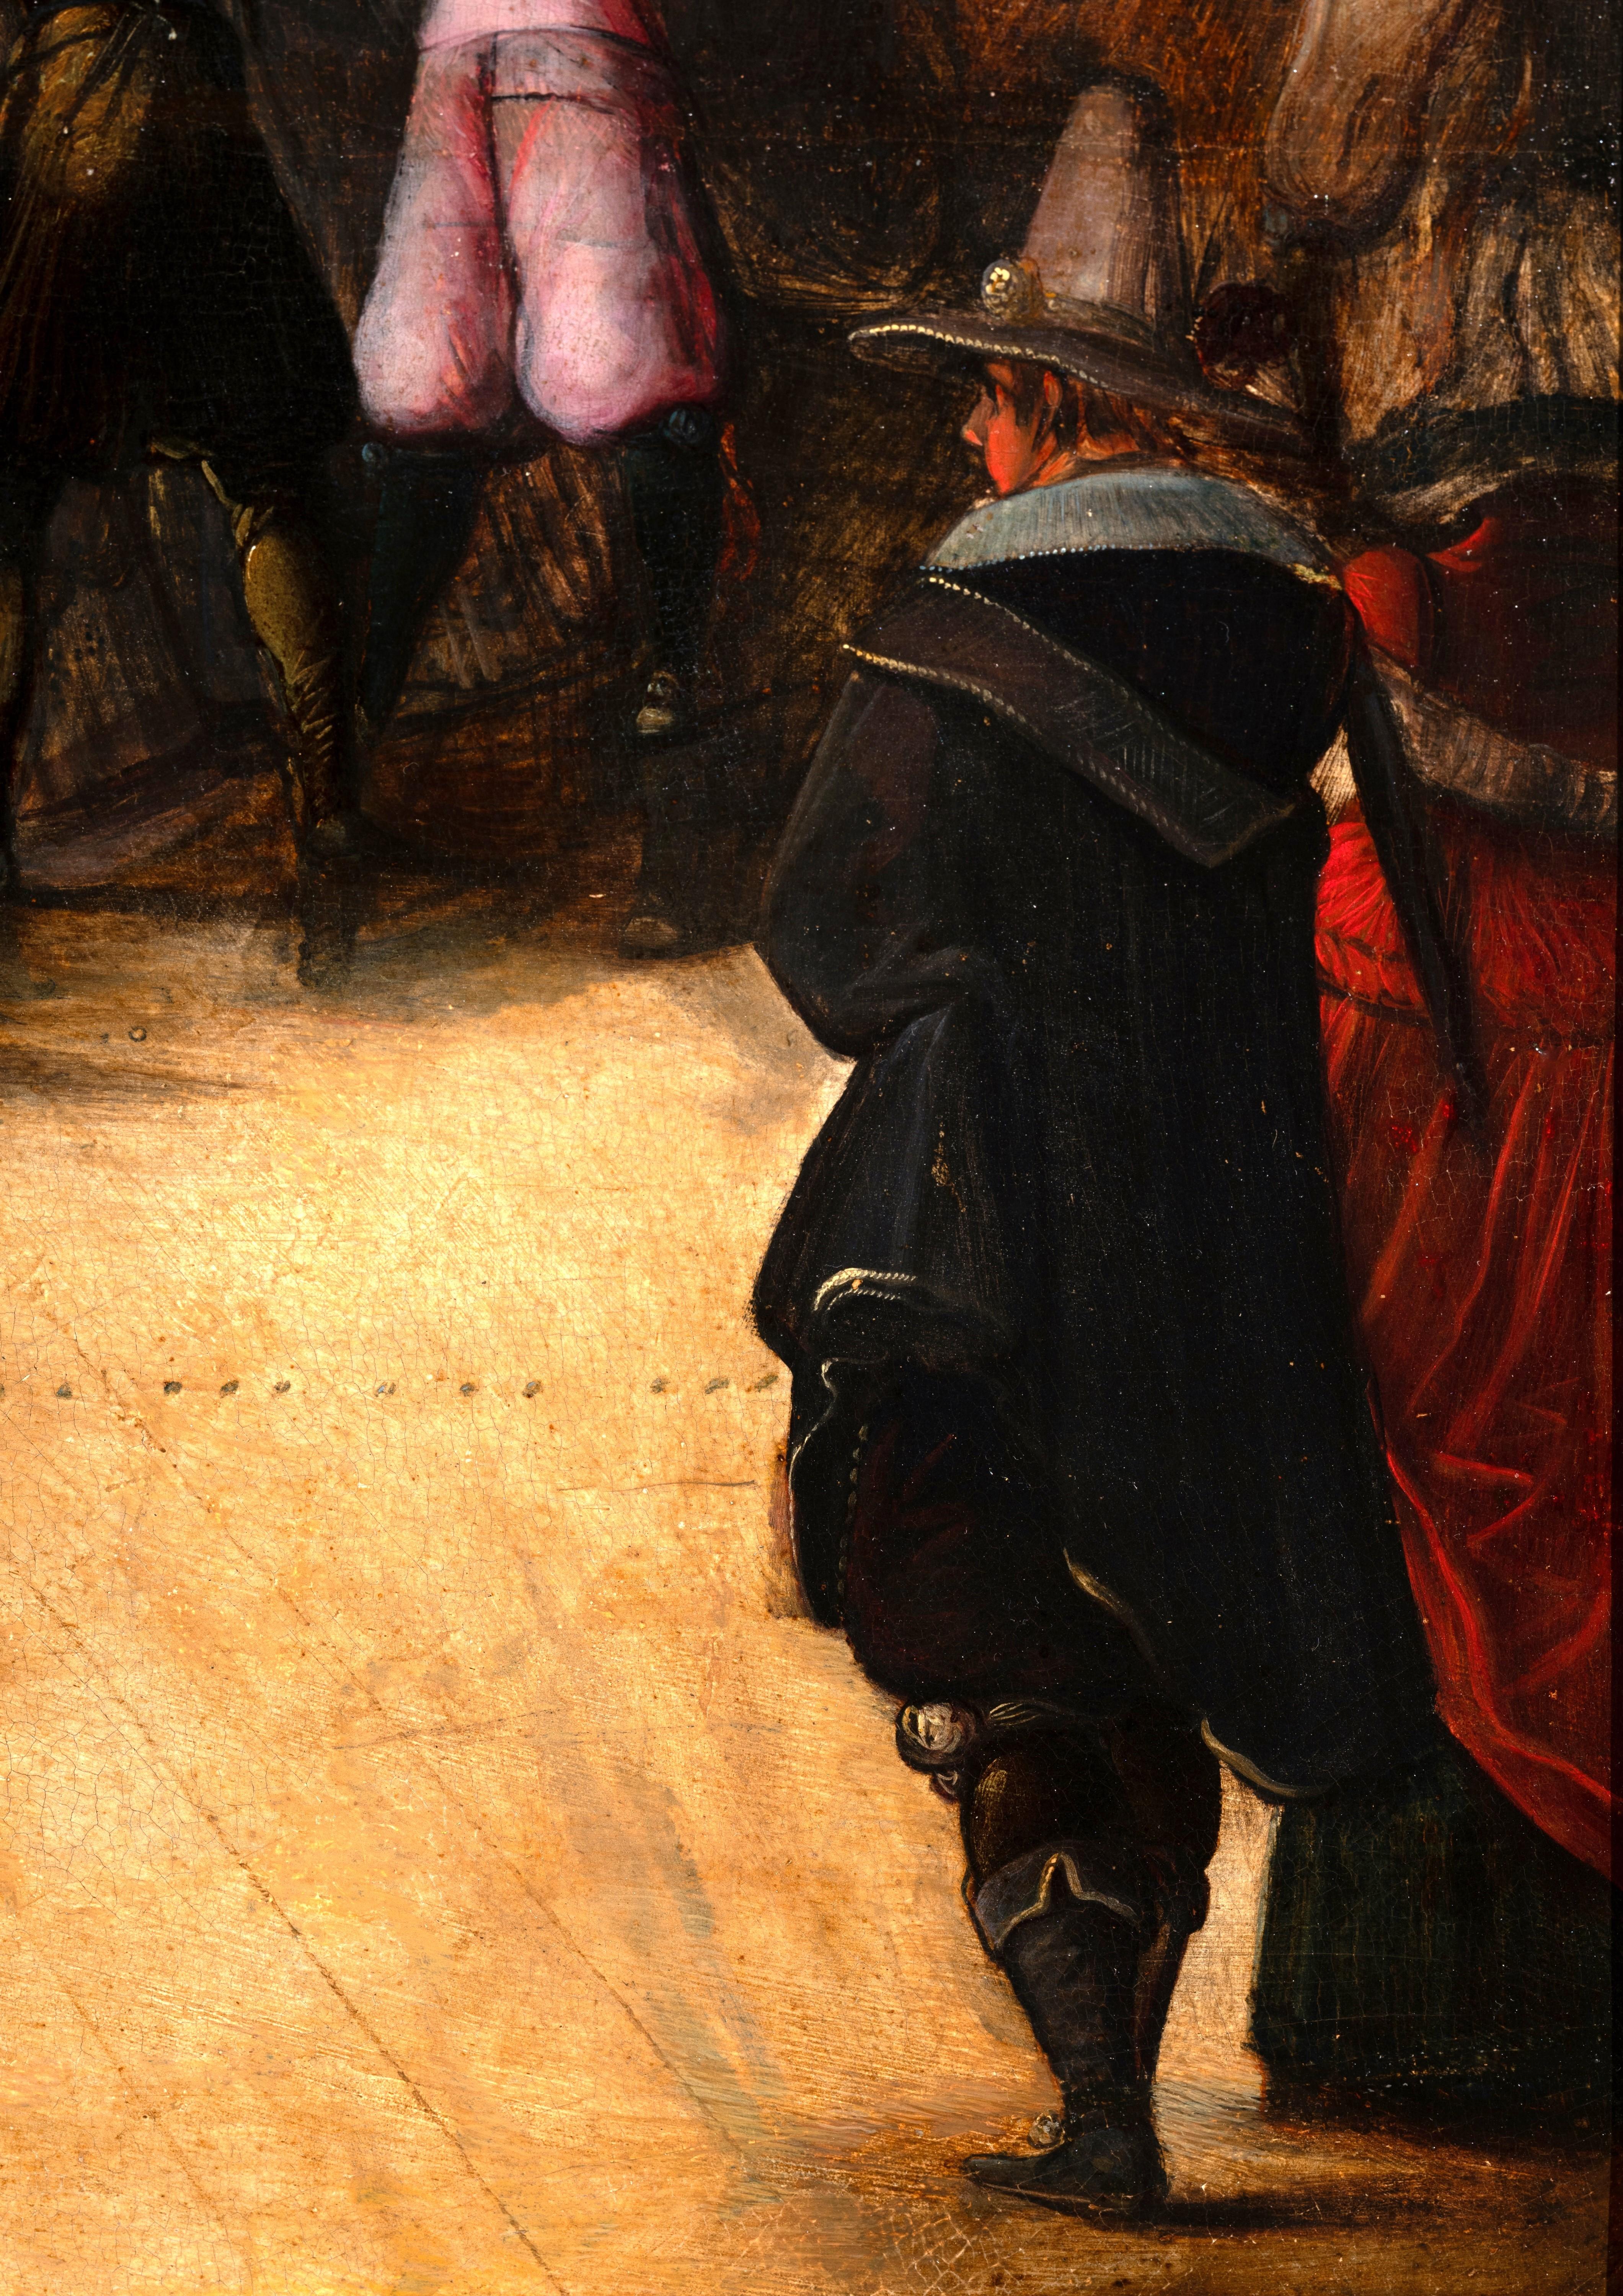 Der verlorene Sohn unter Kurtisanen
Zuschreibung an Hieronymus Francken II (Antwerpen 1578-1623)
Antwerpener Schule des frühen 17. Jahrhunderts

Öl auf Eichenholzplatte,
Abmessungen: H. 52,5 cm (20,67 Zoll), B. 74 cm (29,14 Zoll)
Rahmen aus Formholz